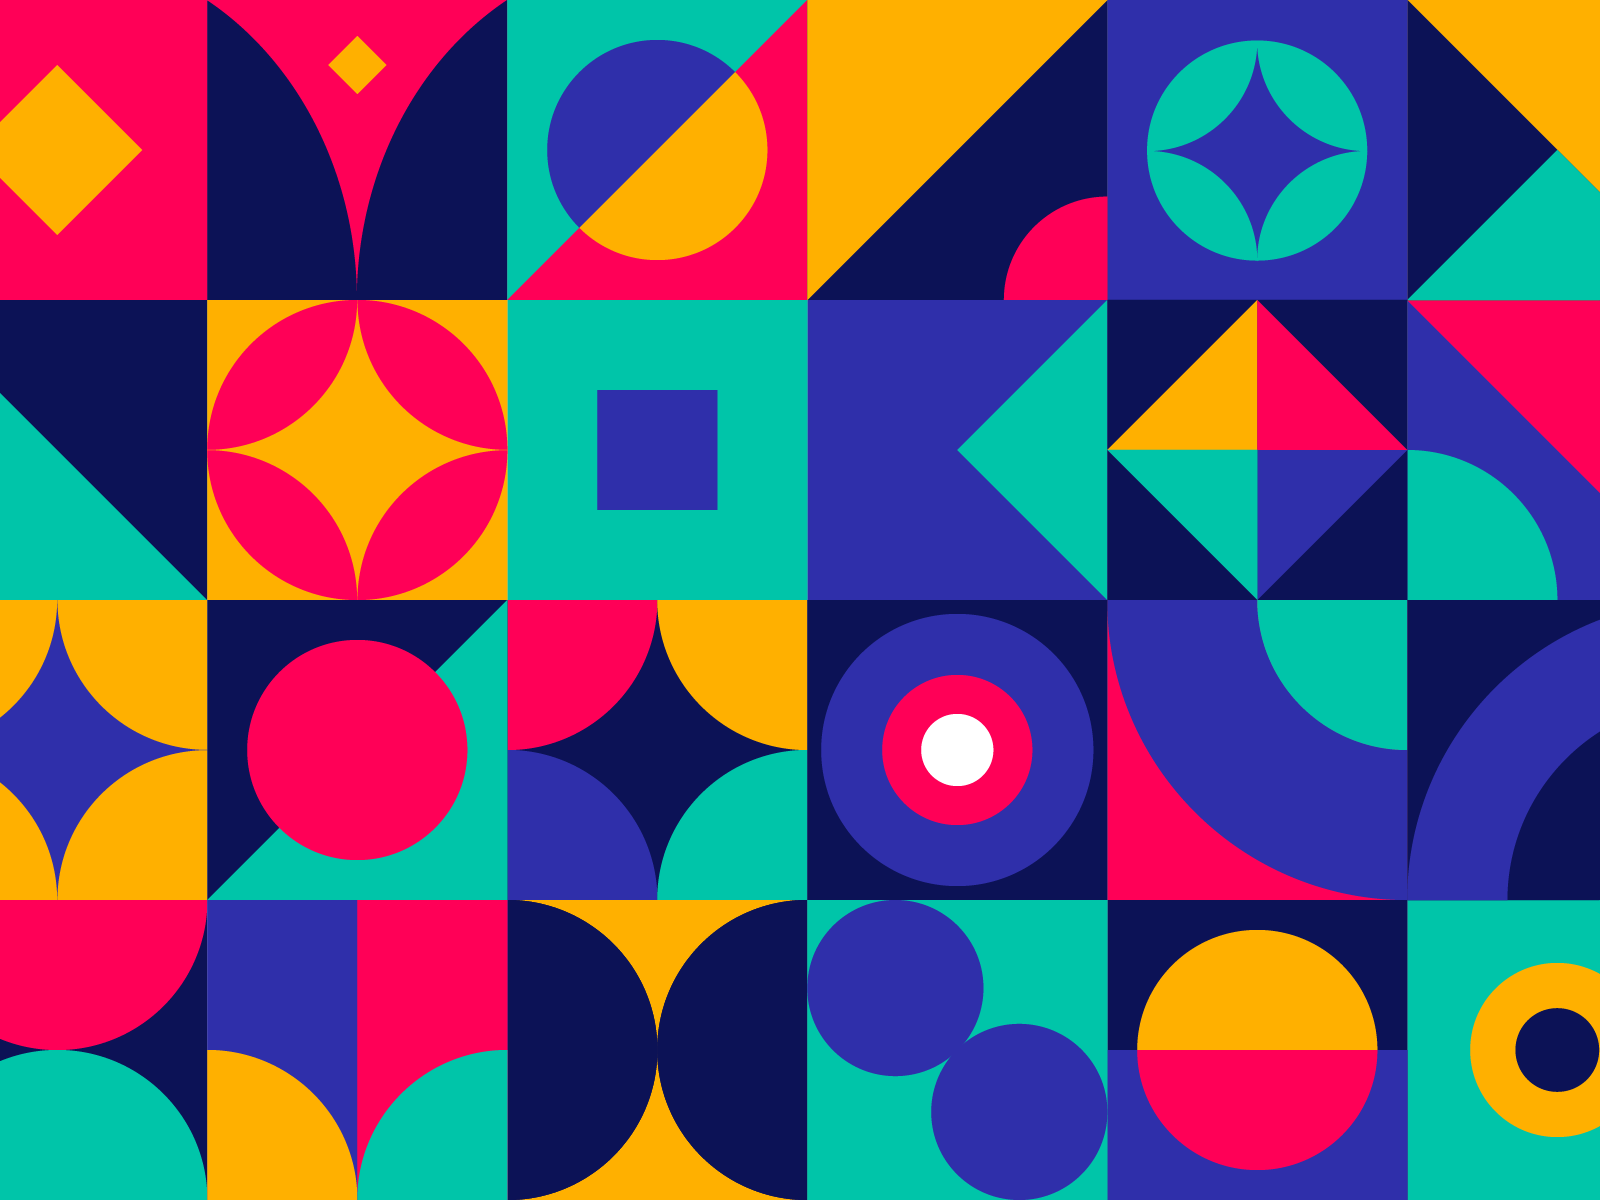 Geometric Pattern | Cover by Đorđe Vukojević on Dribbble